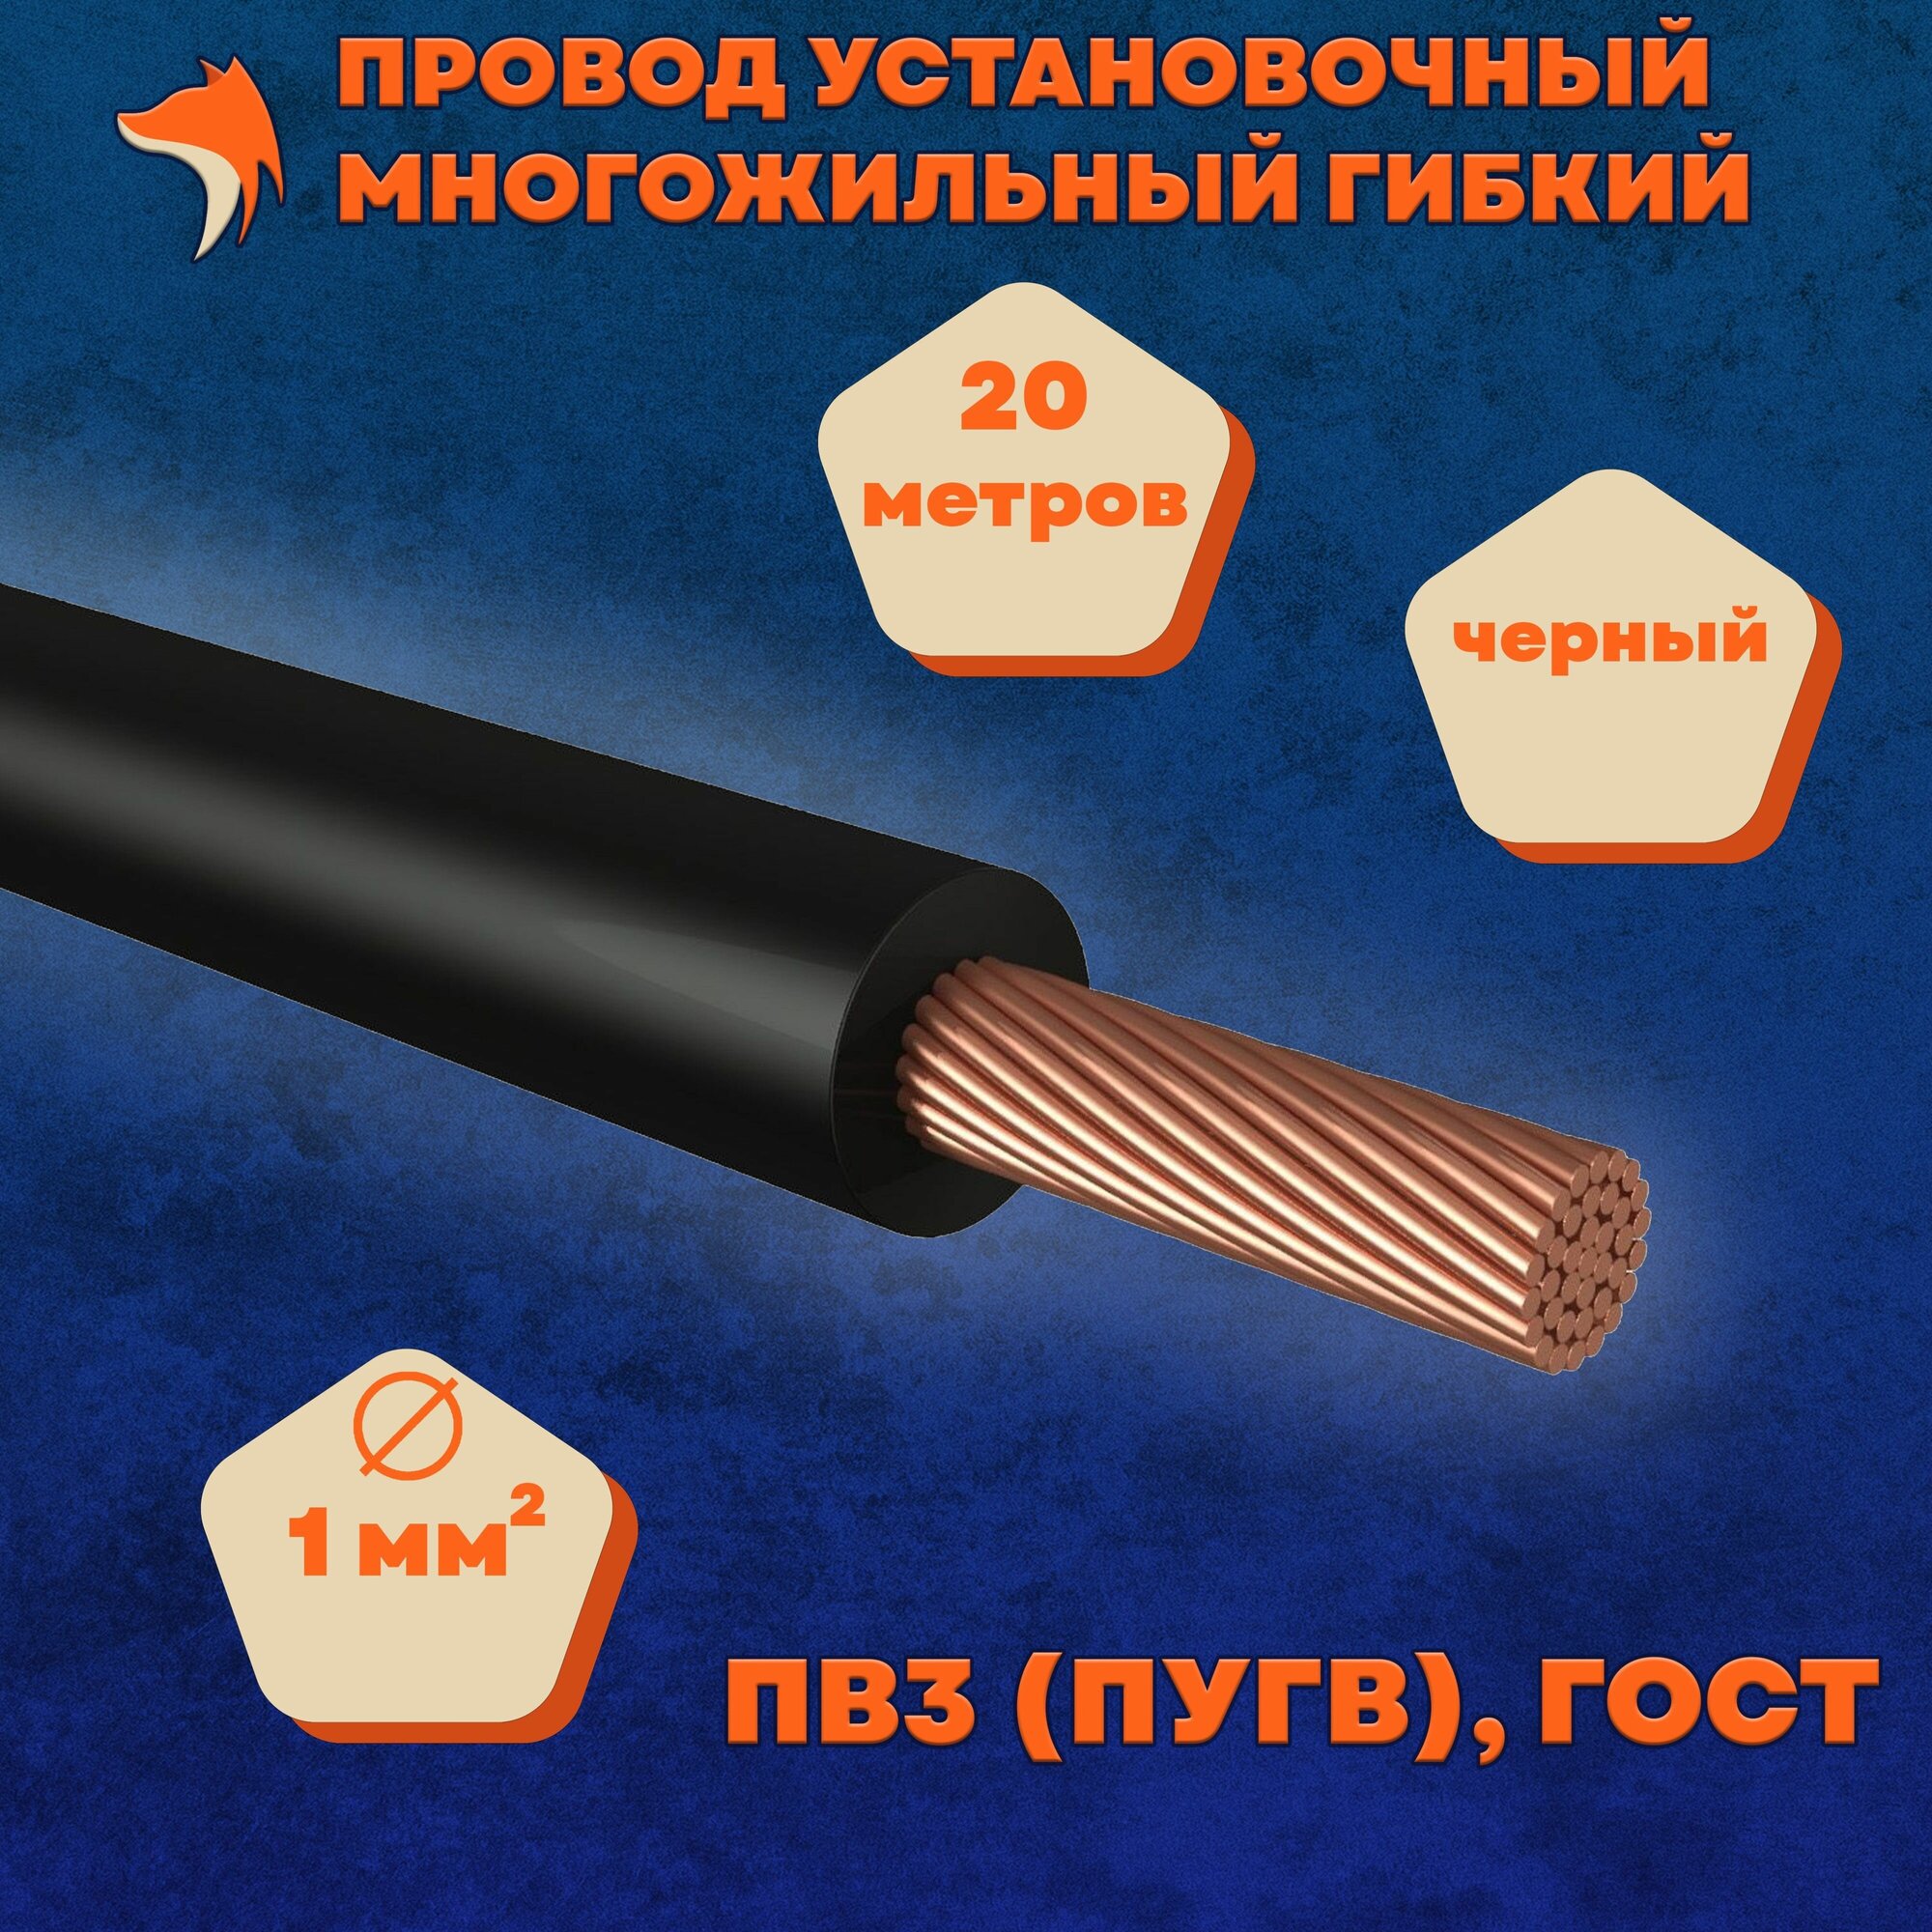 Провод установочный многожильный гибкий ПВ3 (ПуГВ) 1 мм , черный, 20 метров - фотография № 1